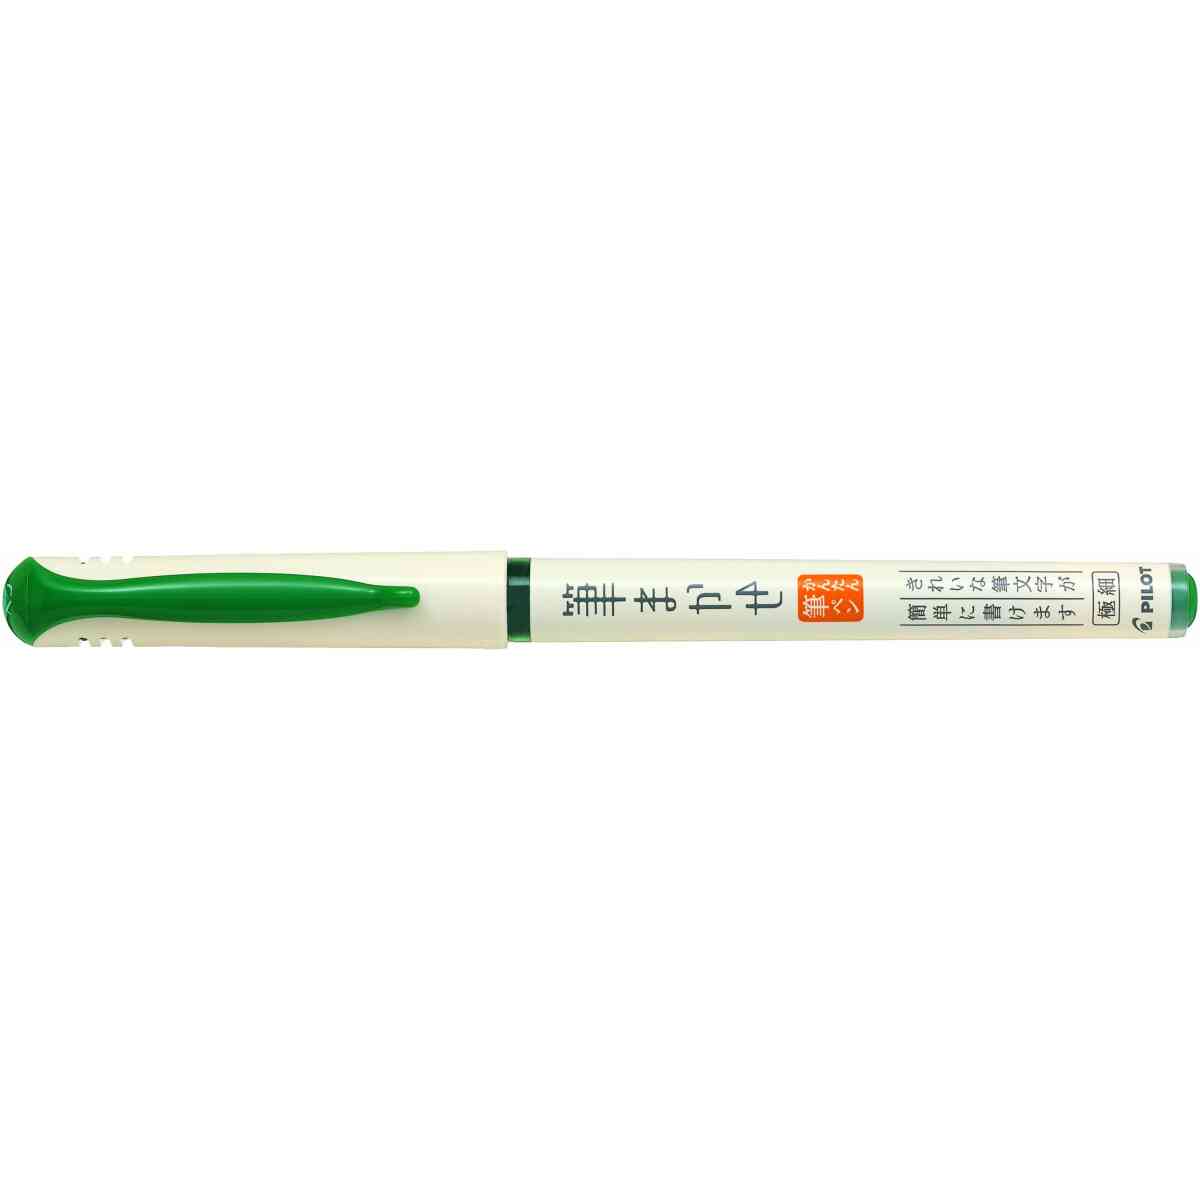 4902505463204 Brush Pen Green scaled